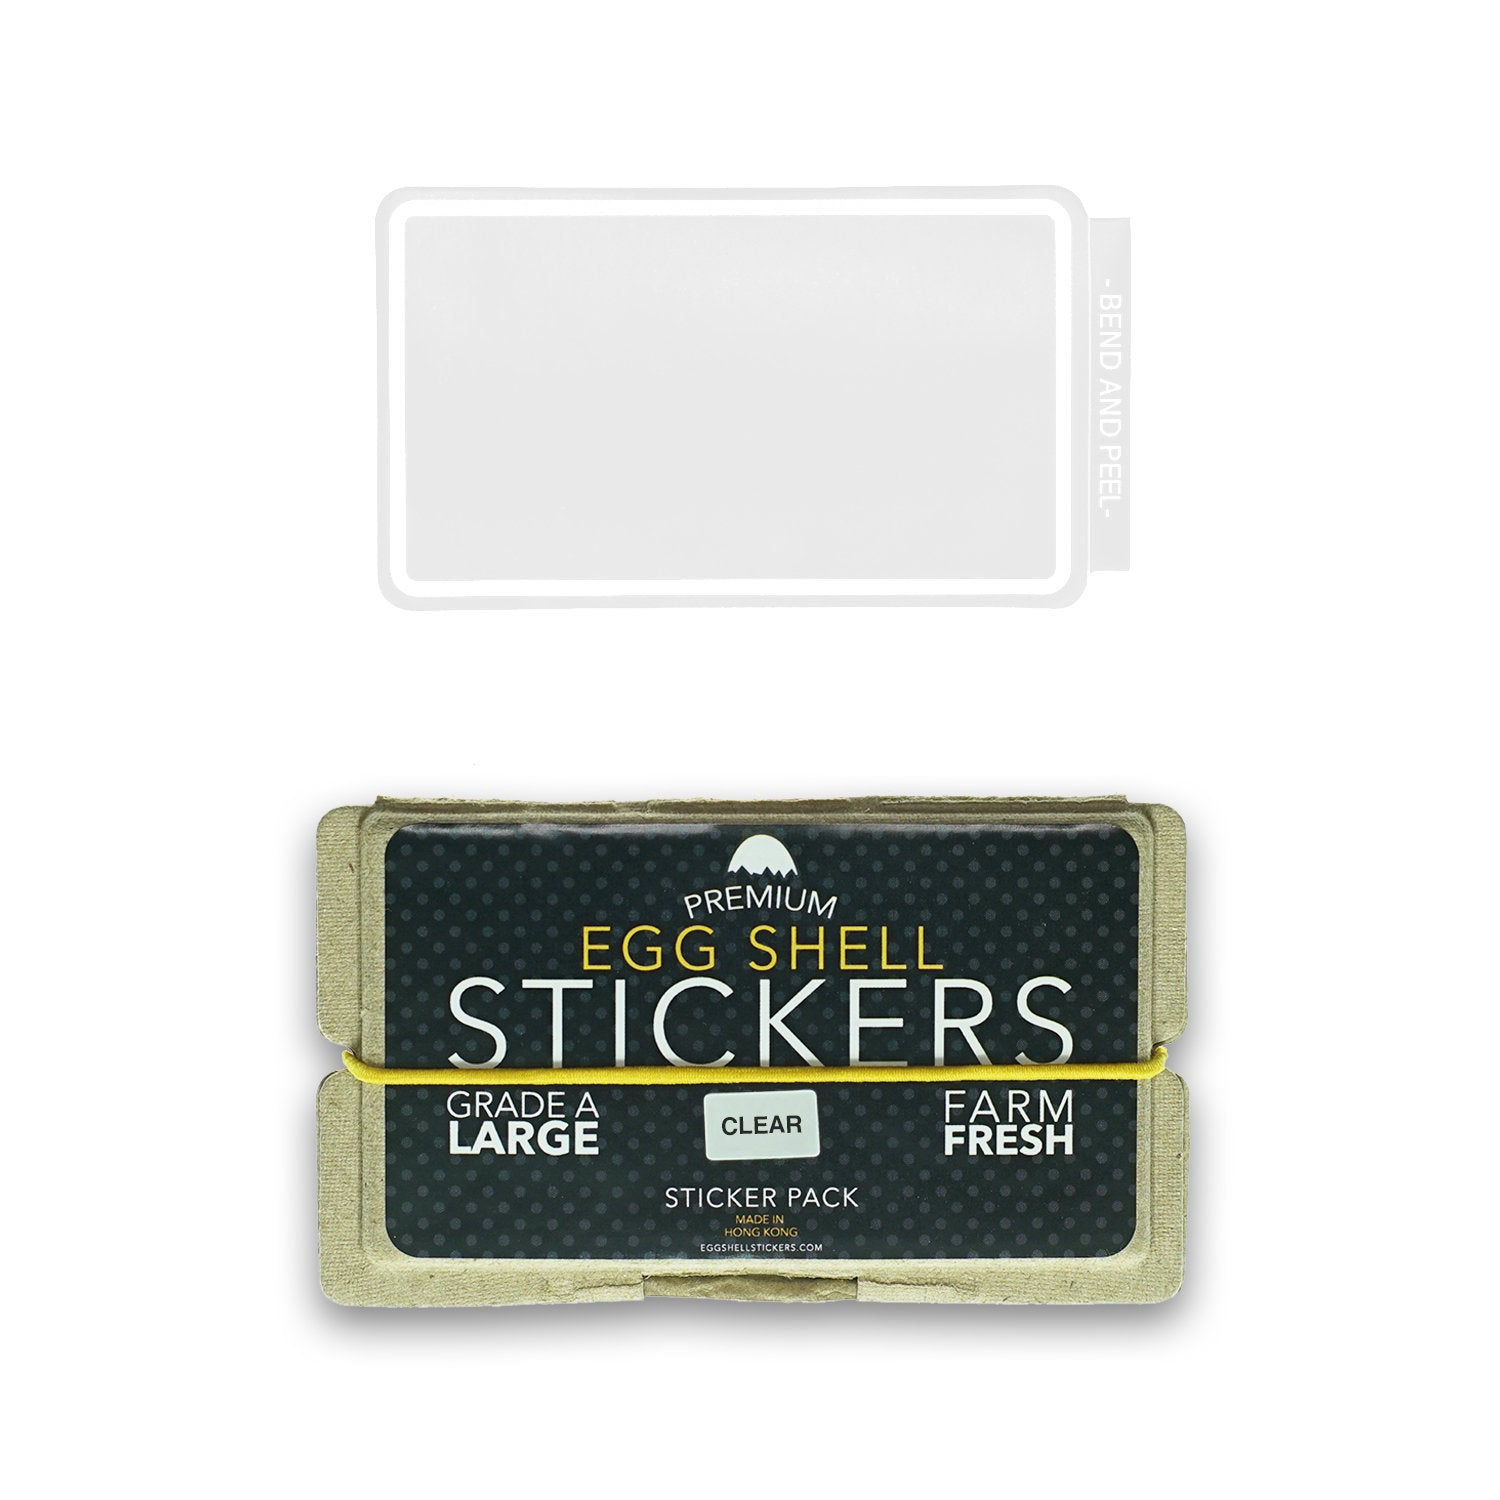 Egg Shell Sticker "Transparent Blanks" Pack